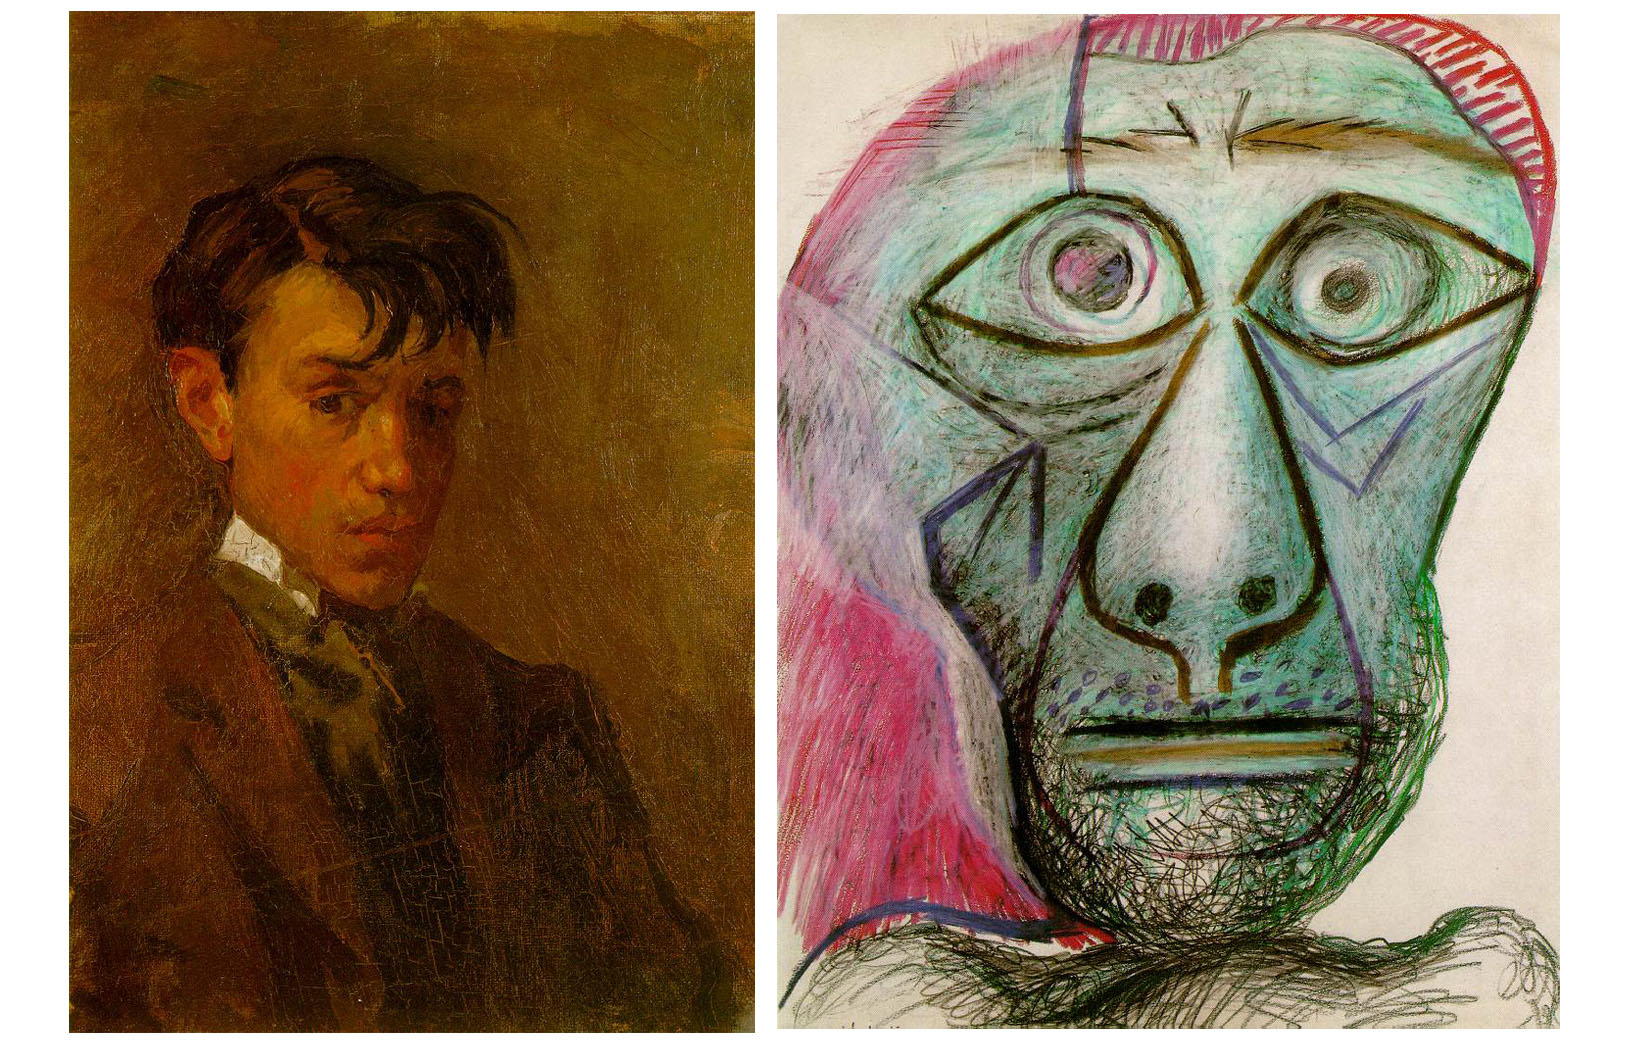 Picasso’s self portrait age 16 vs self-portrait age 72